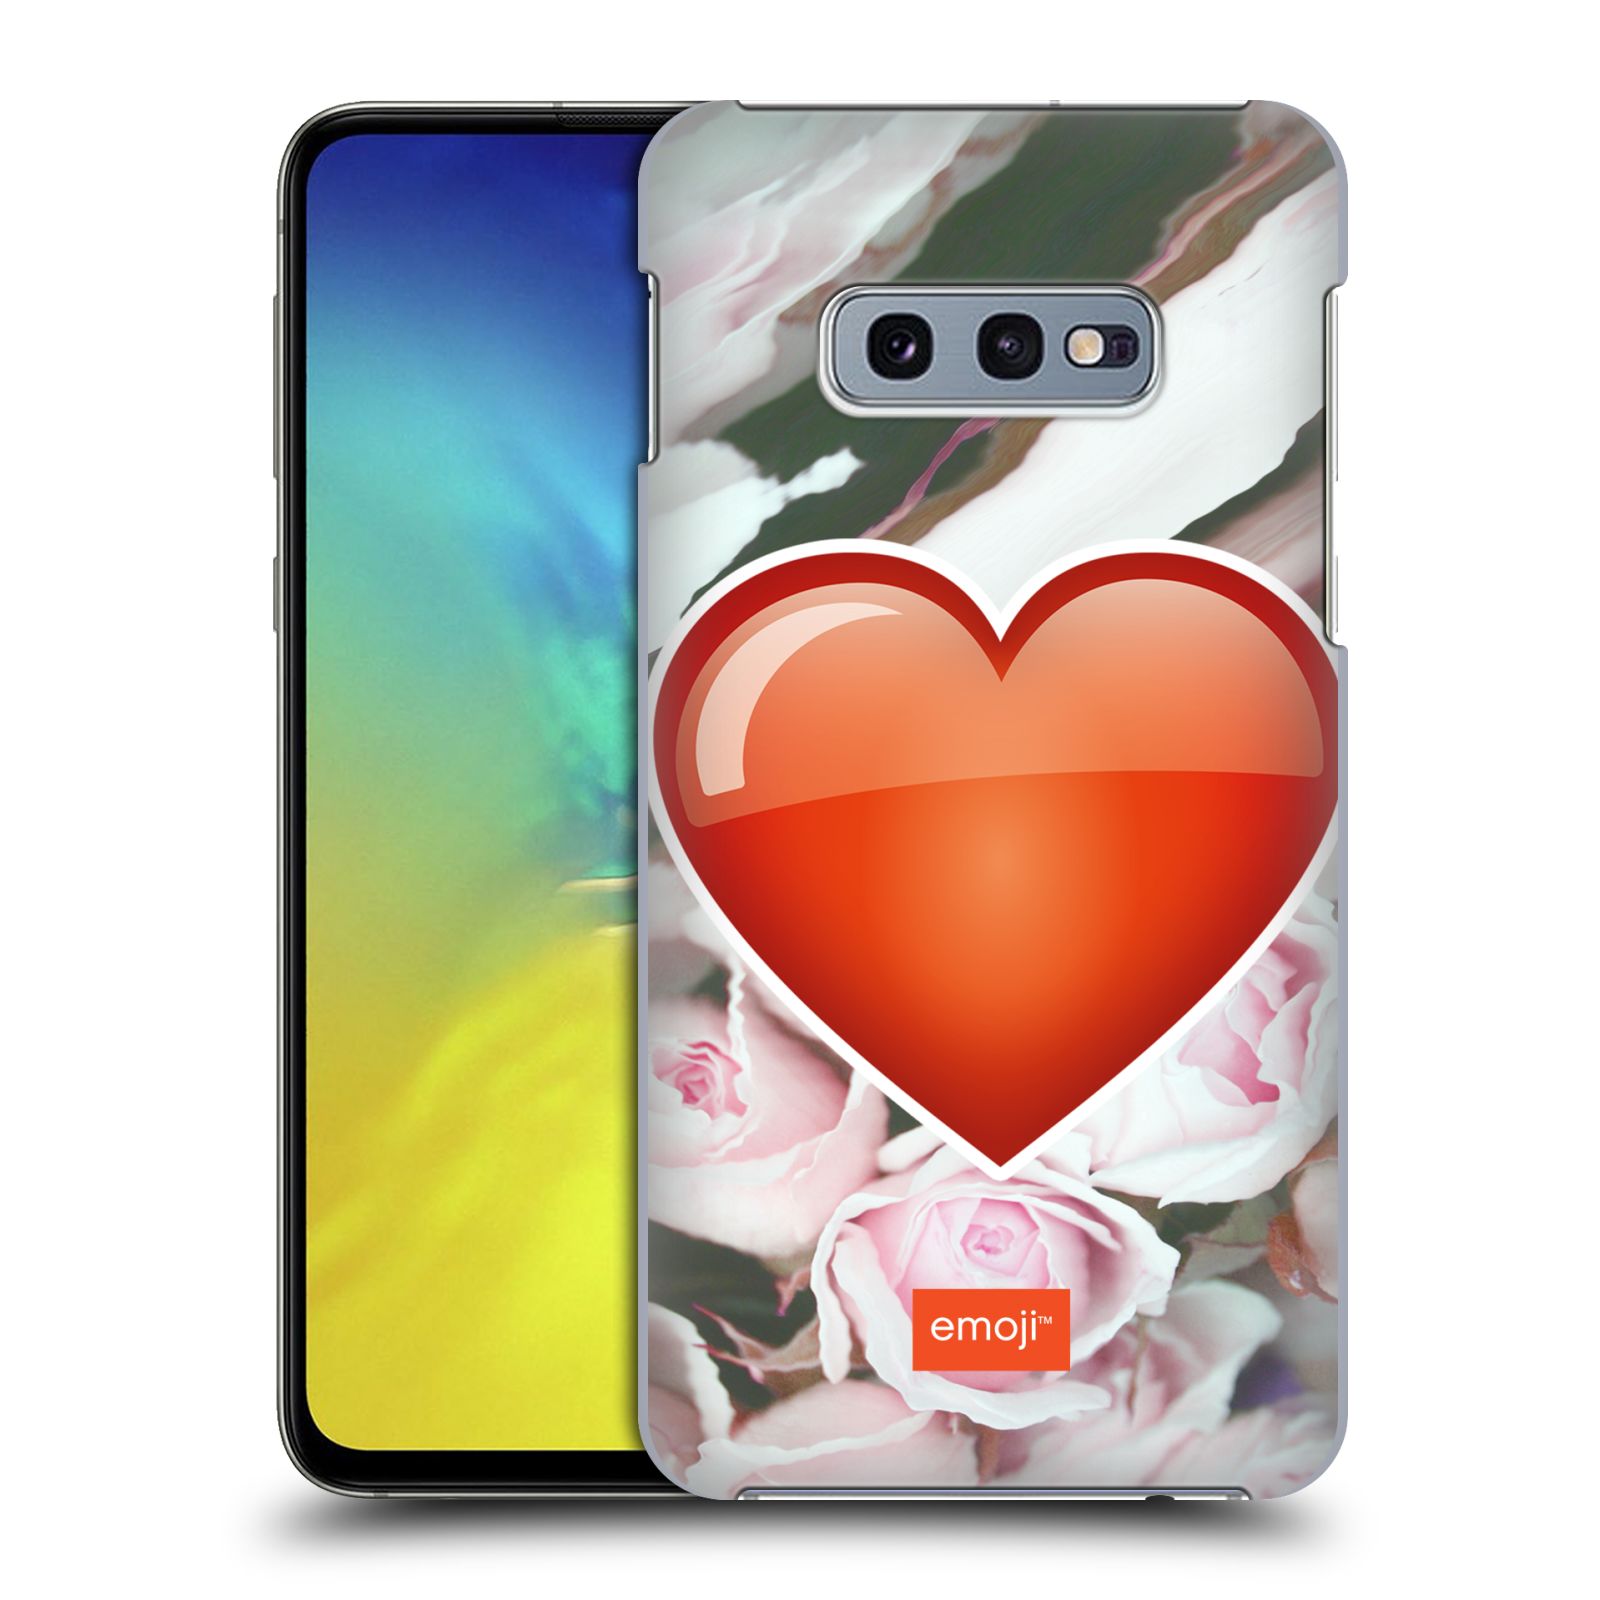 Pouzdro na mobil Samsung Galaxy S10e - HEAD CASE - Emoji srdíčko